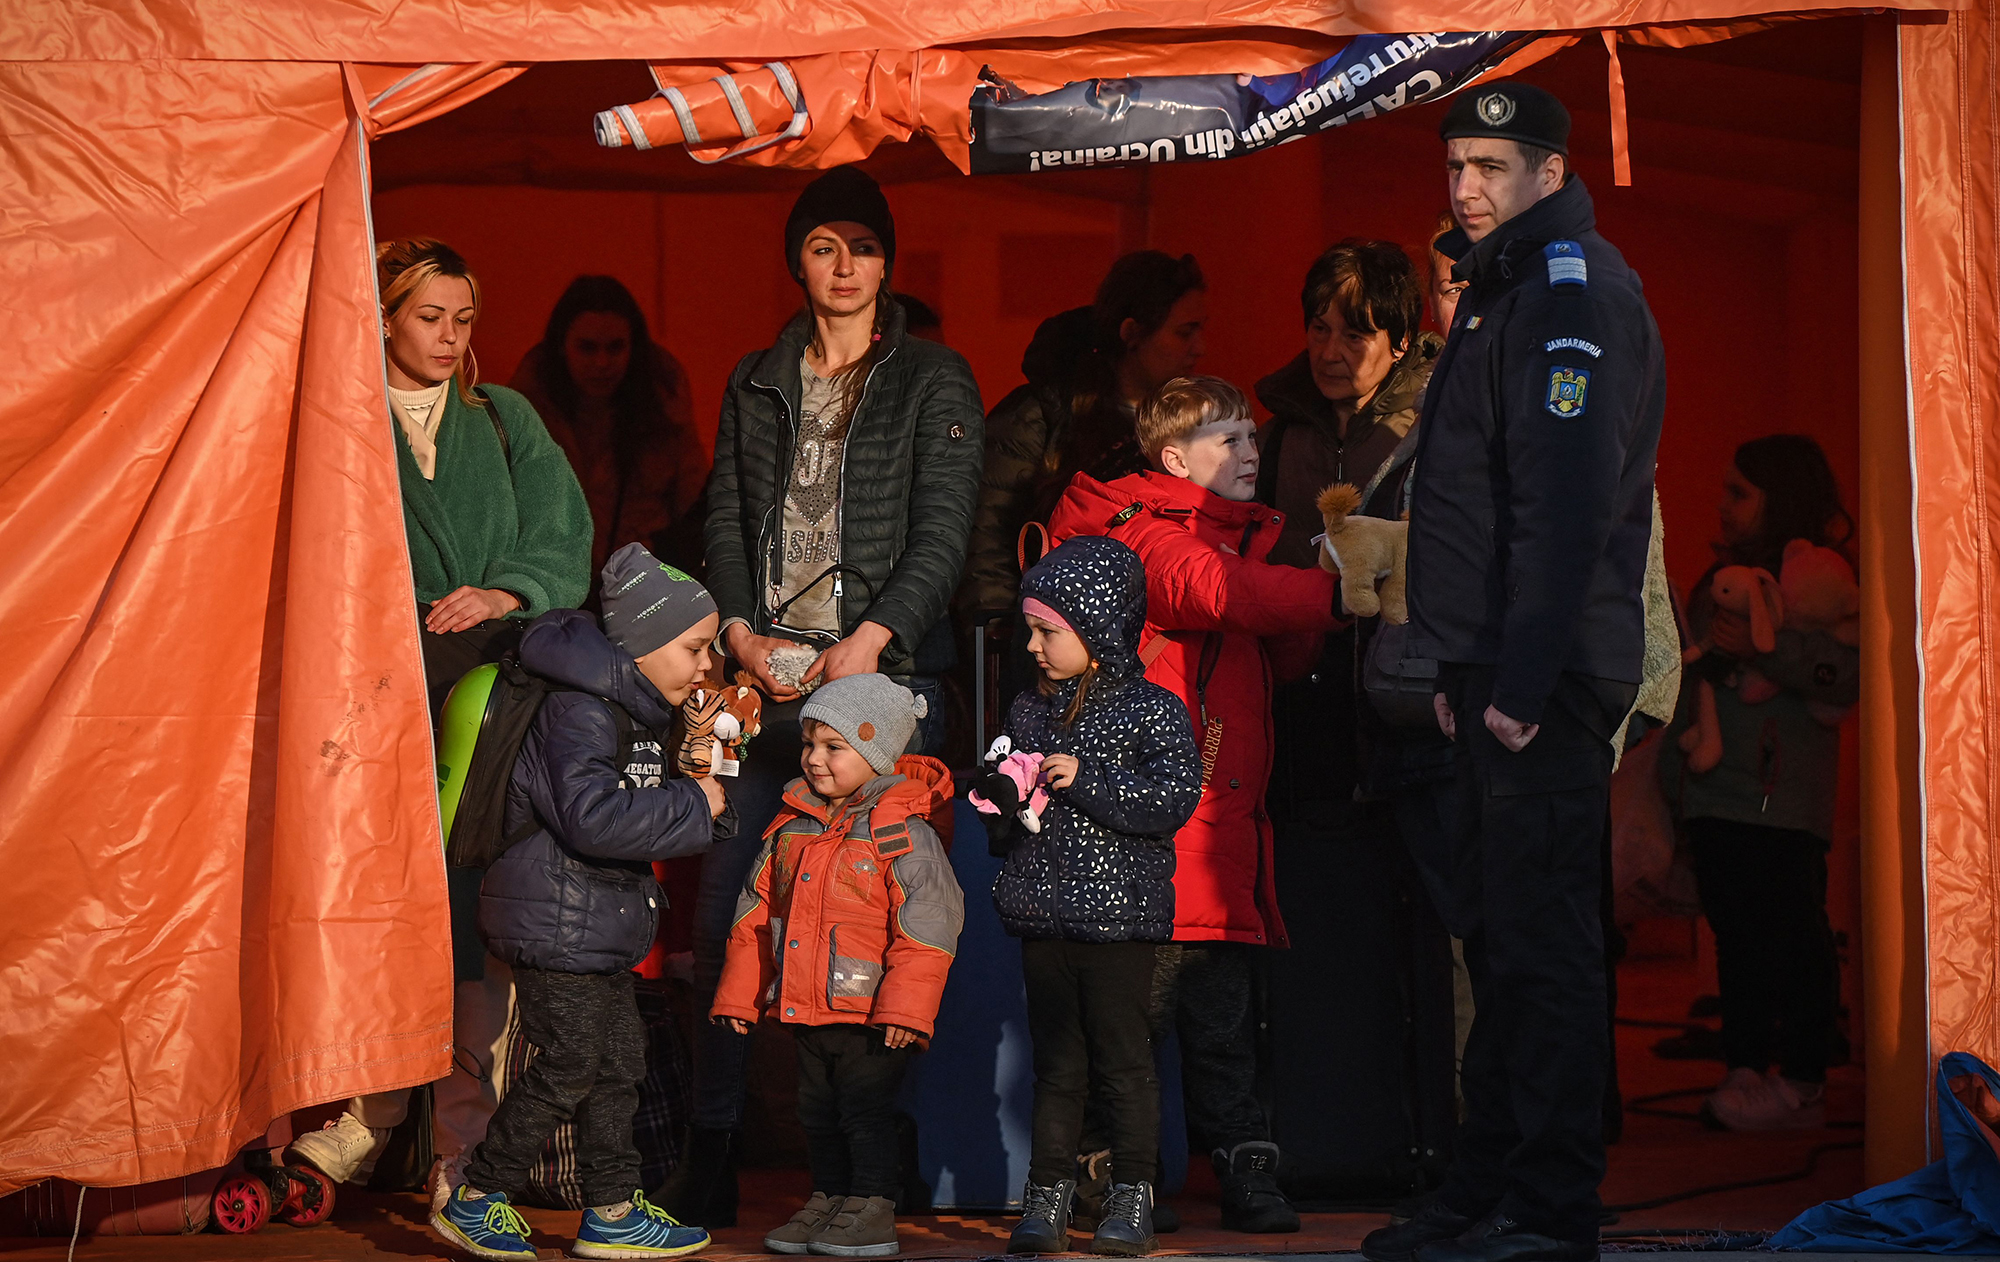 "Залишитися може половина". Які плани біженців у Польщі, Чехії та Румунії